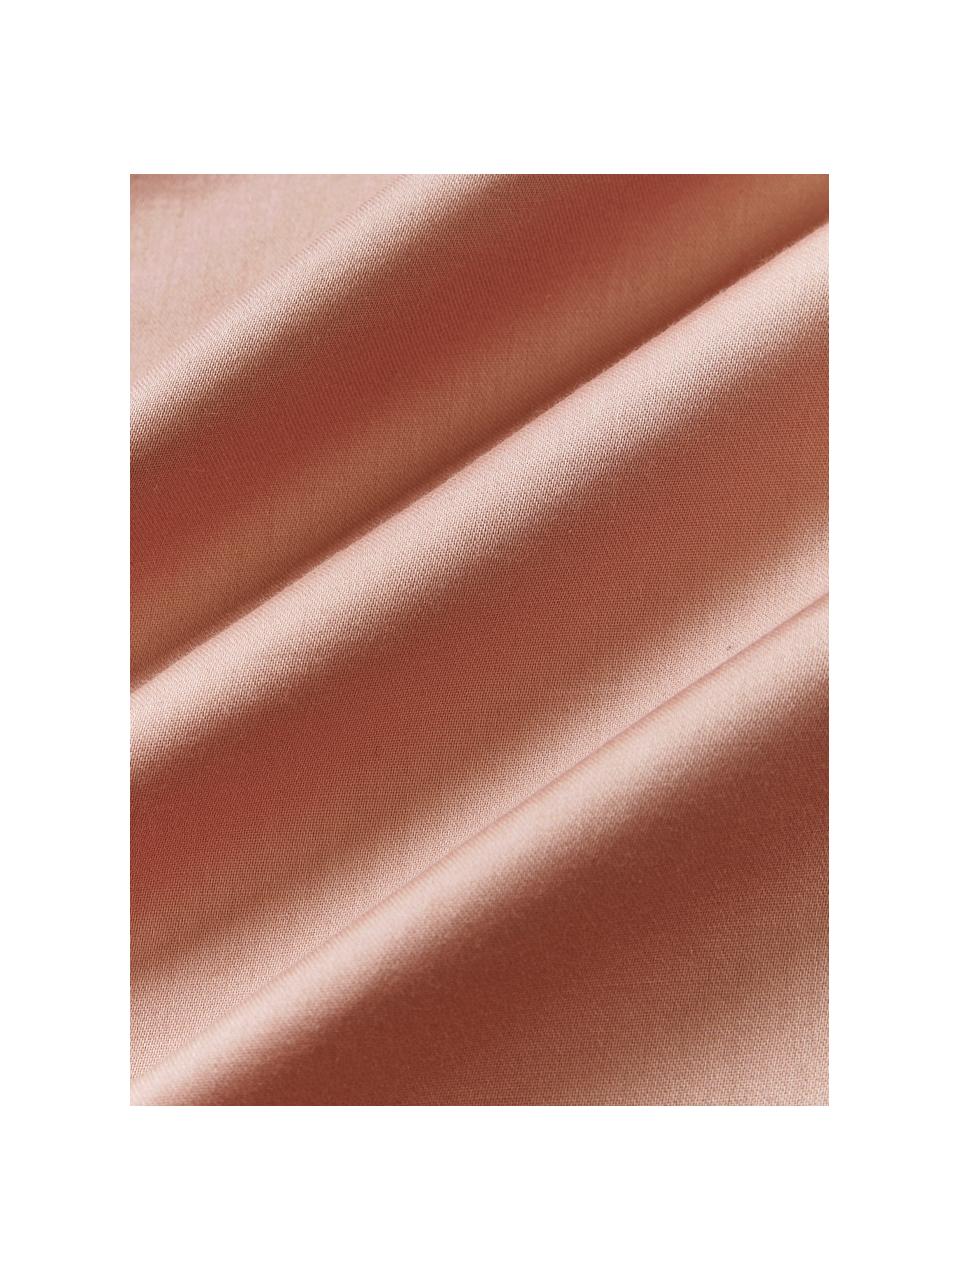 Poszwa na kołdrę z satyny bawełnianej Comfort, Brudny różowy, S 200 x D 200 cm